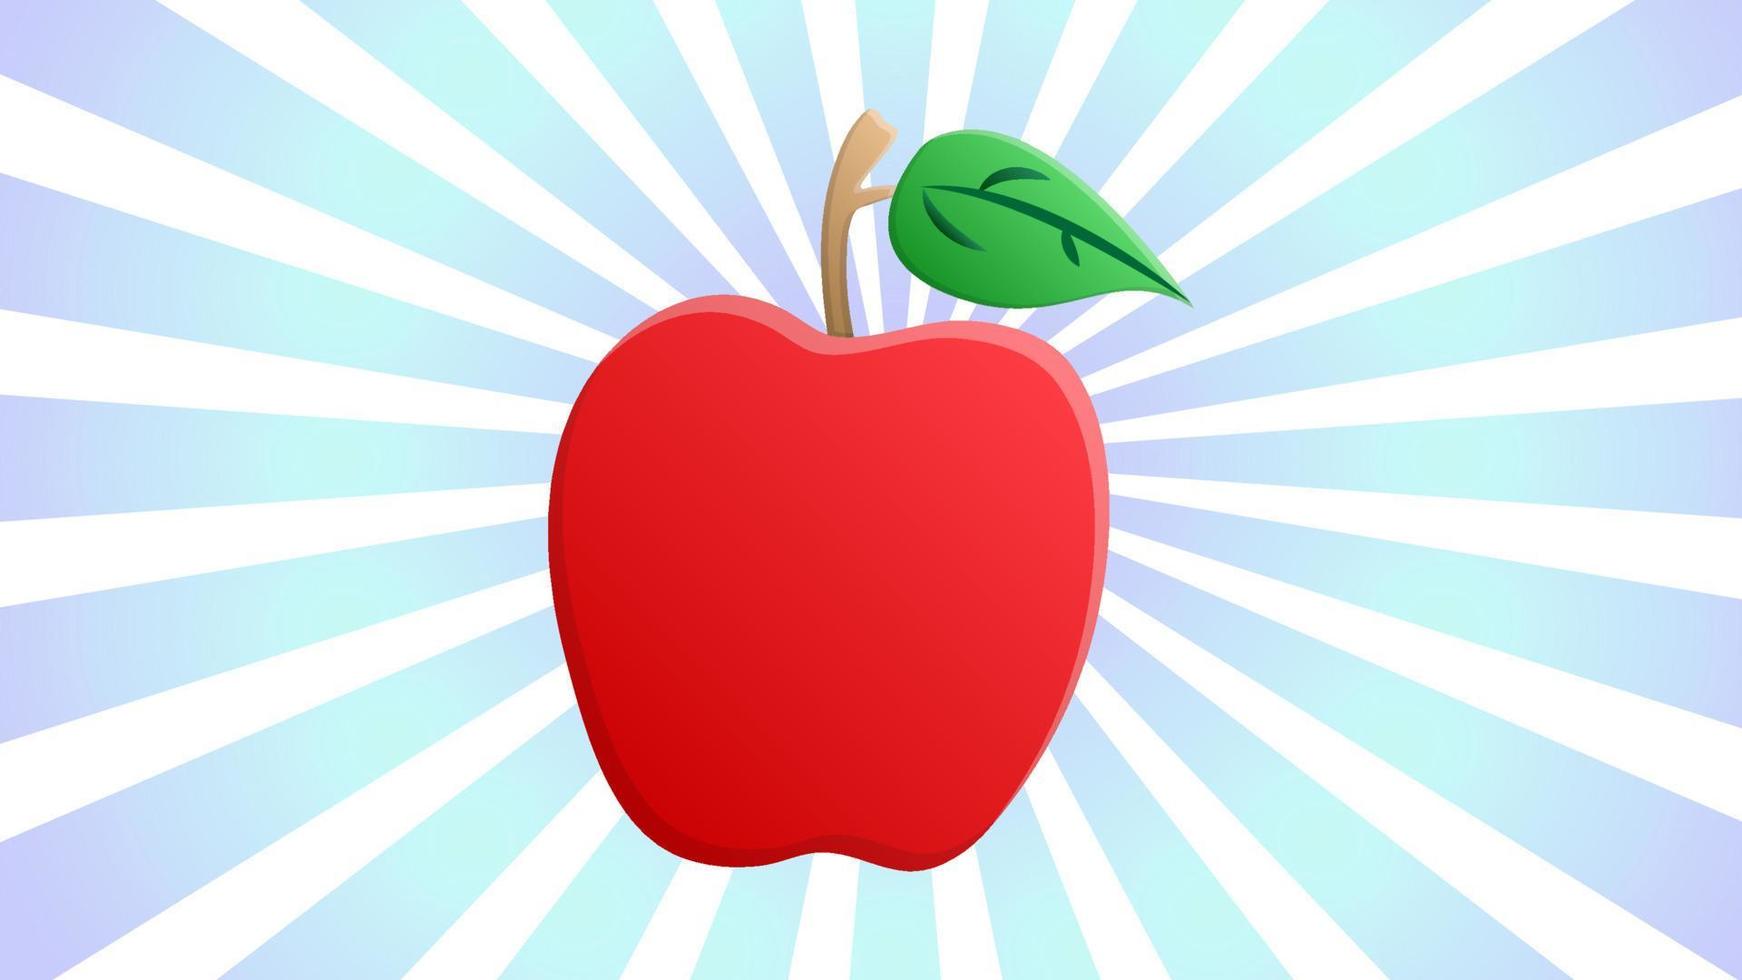 äpple av röd Färg på en vit och blå retro bakgrund, vektor illustration. frukt för äter. friska mat, diet mat, vegan mat, rå mat diet. äpple med grön blad på topp